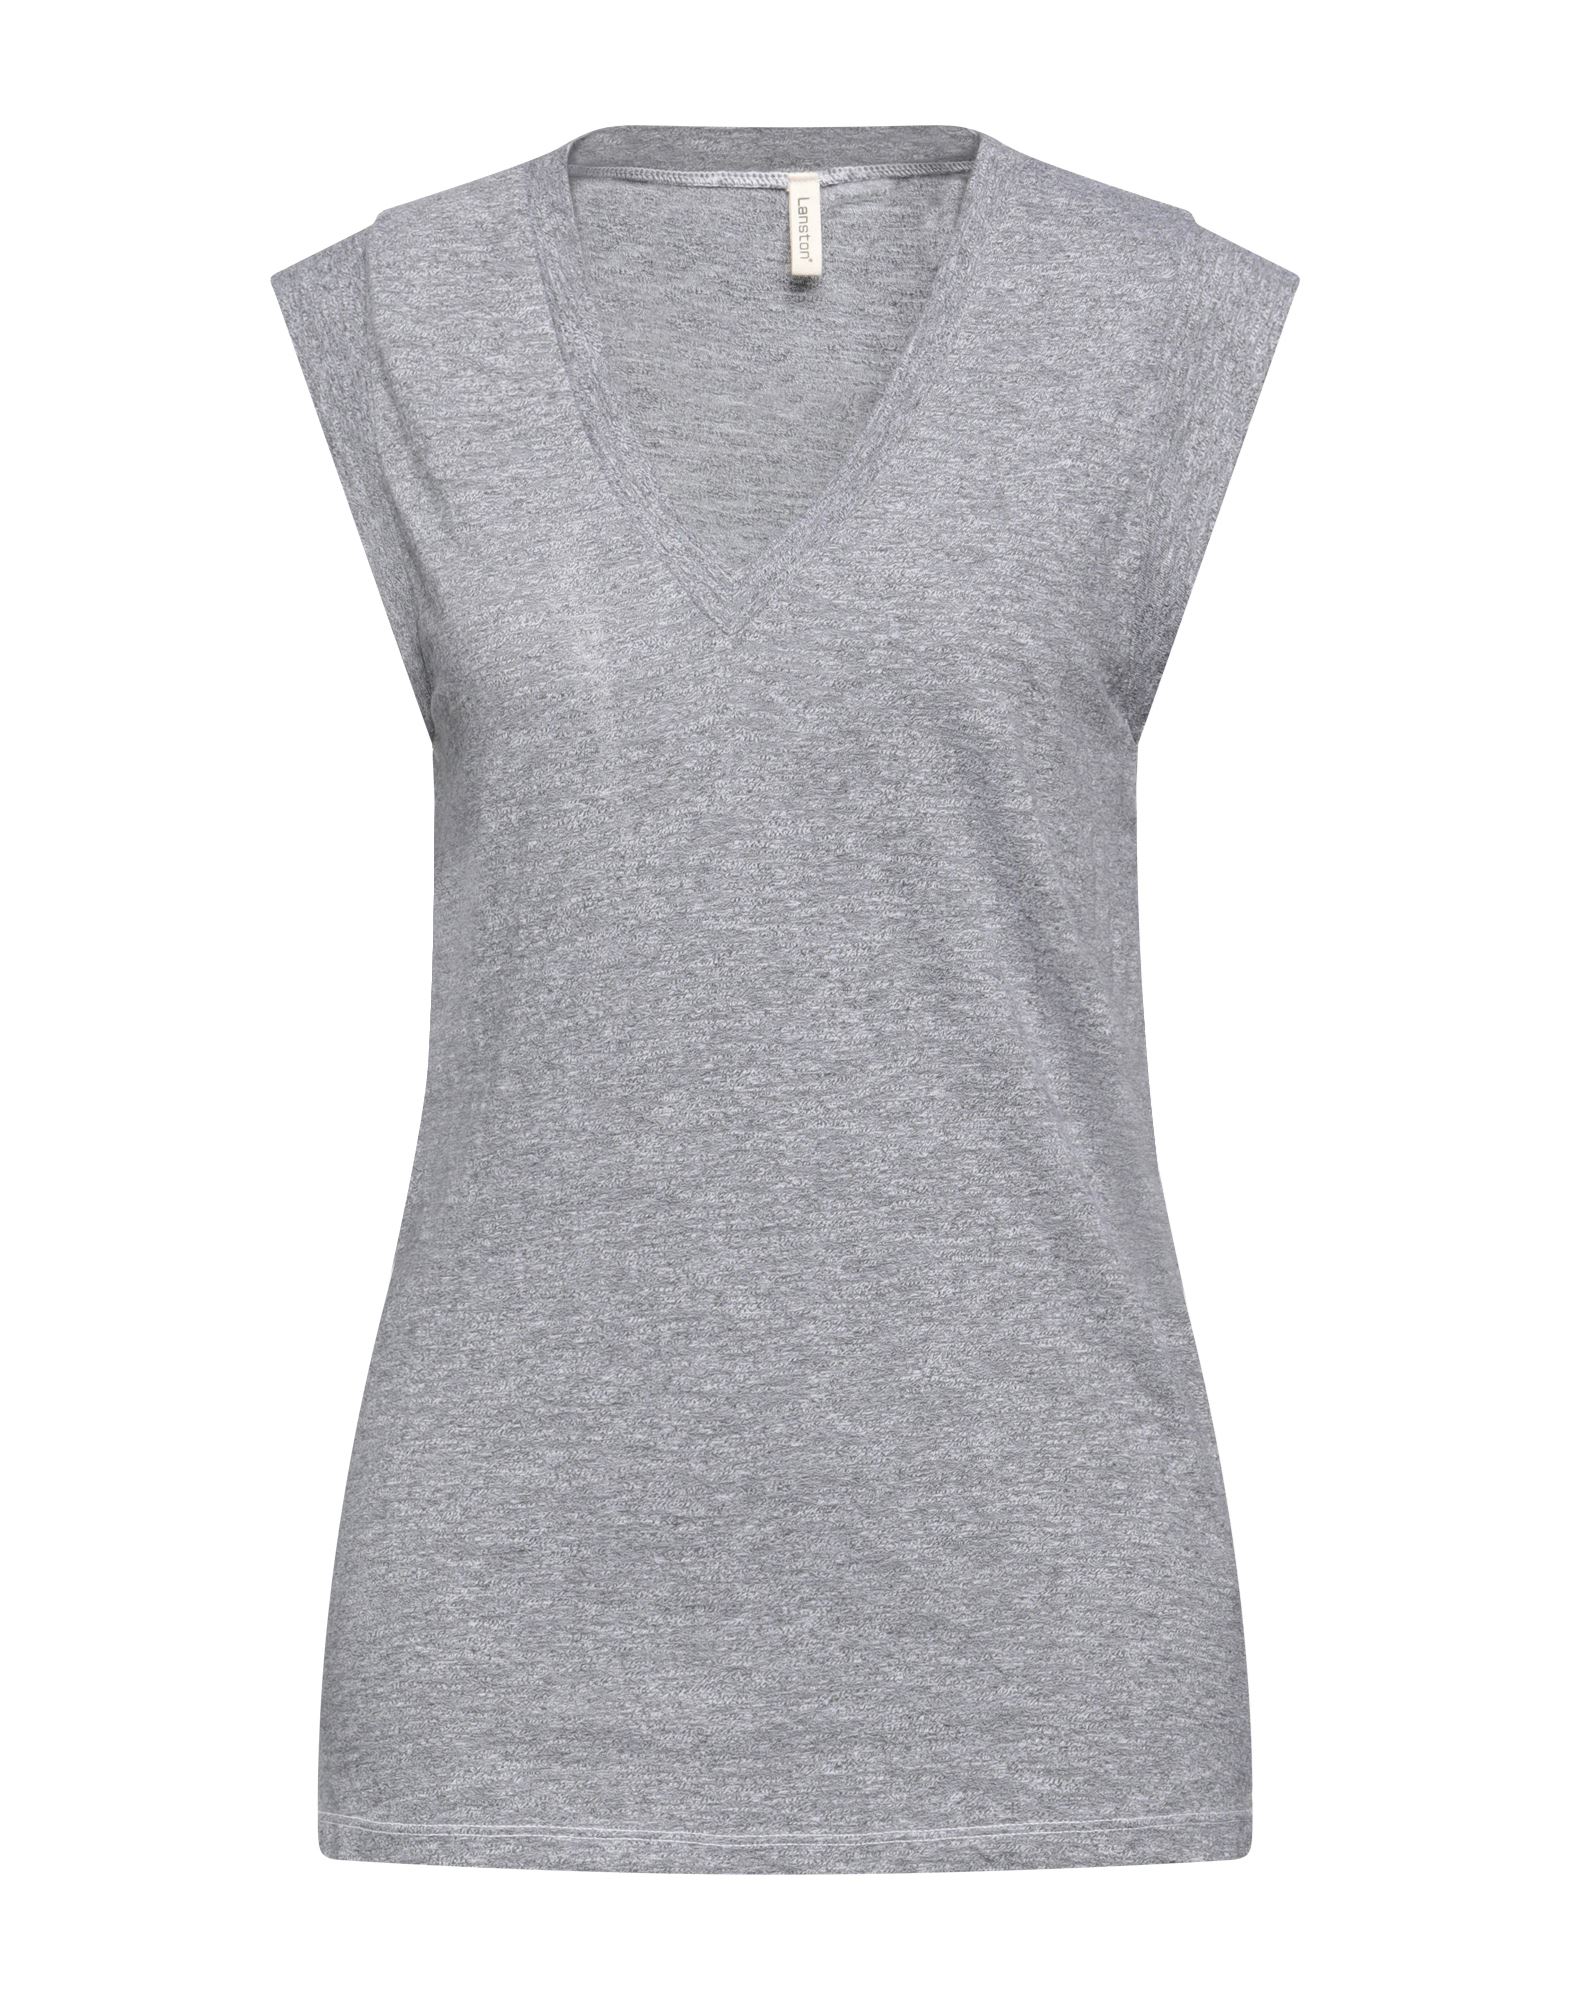 Lanston Woman T-shirt Grey Size S Polyester, Rayon, Cotton